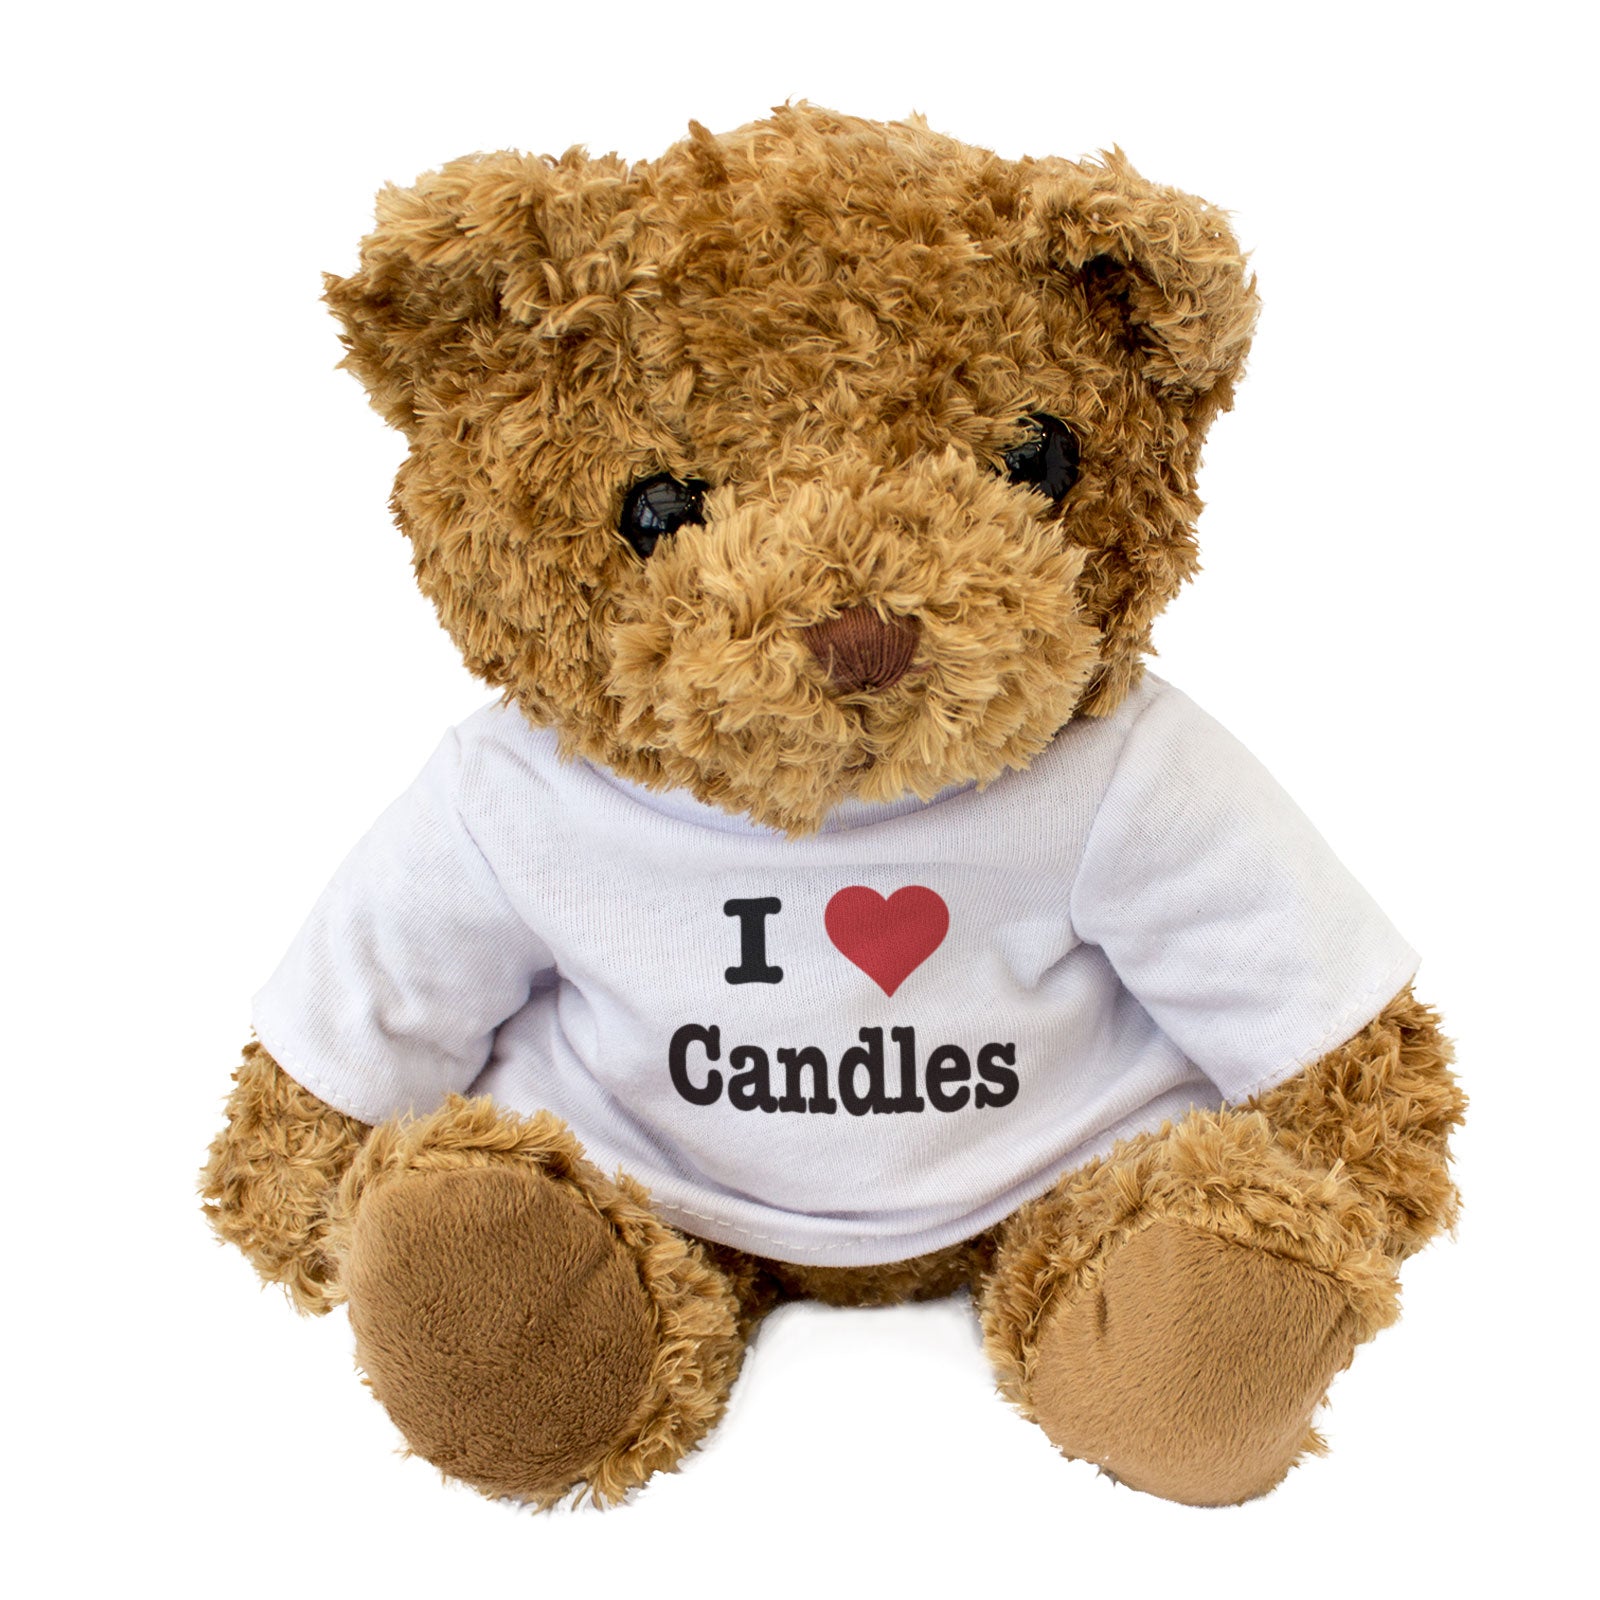 I Love Candles - Teddy Bear